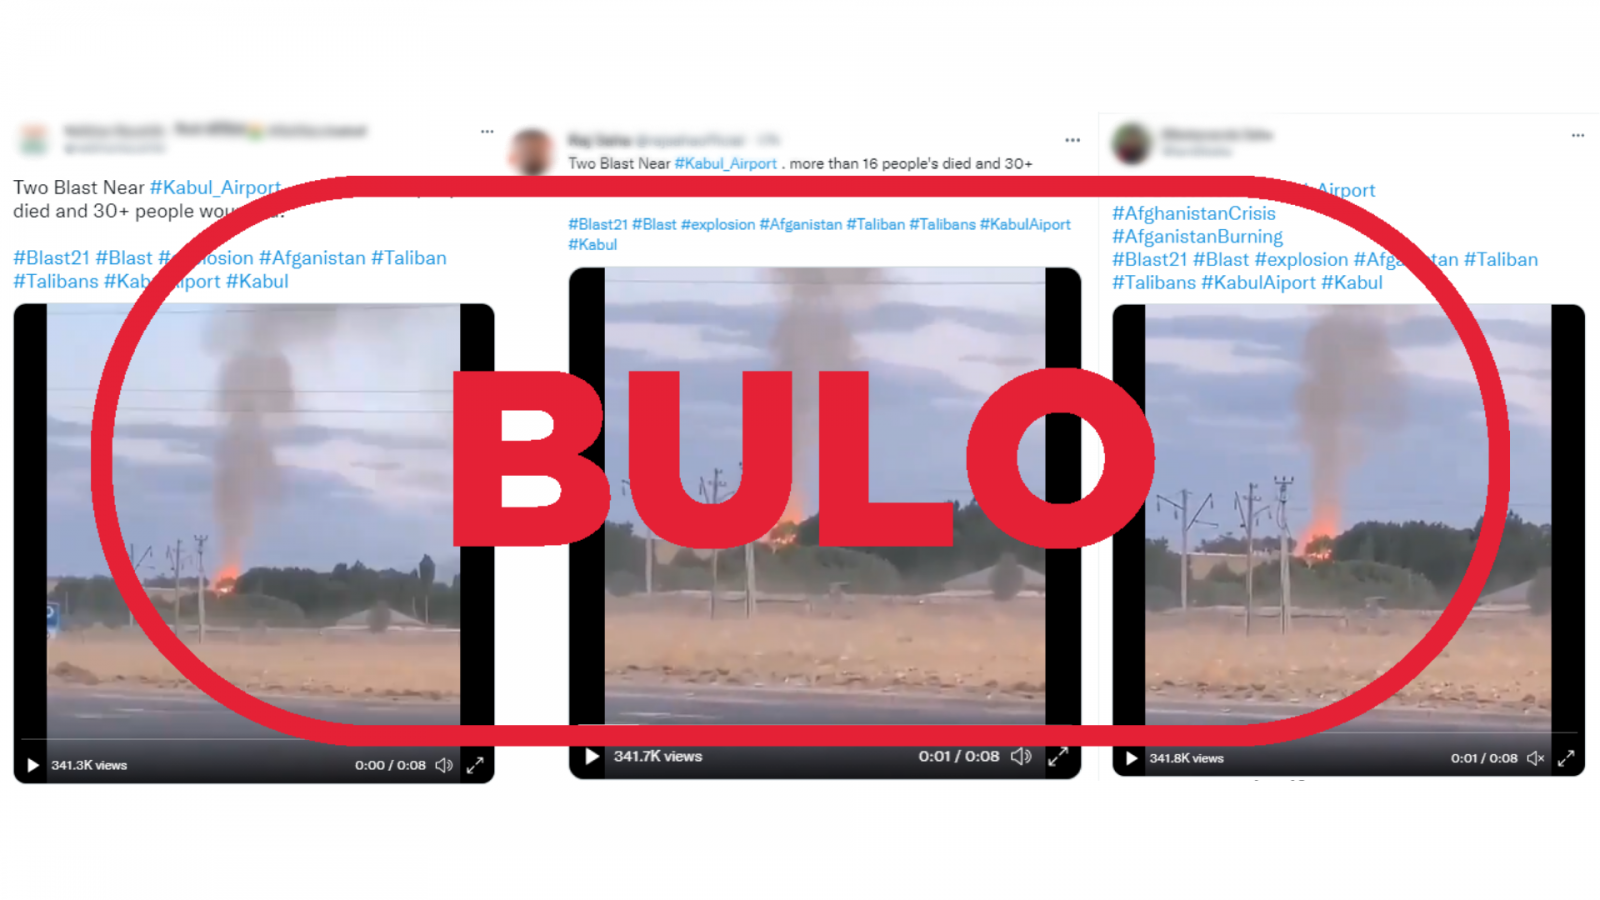 Mensajes de Twitter que presentan el vídeo de la explosión como si fuera en Kabul con el sello bulo en rojo de VerificaRTVE